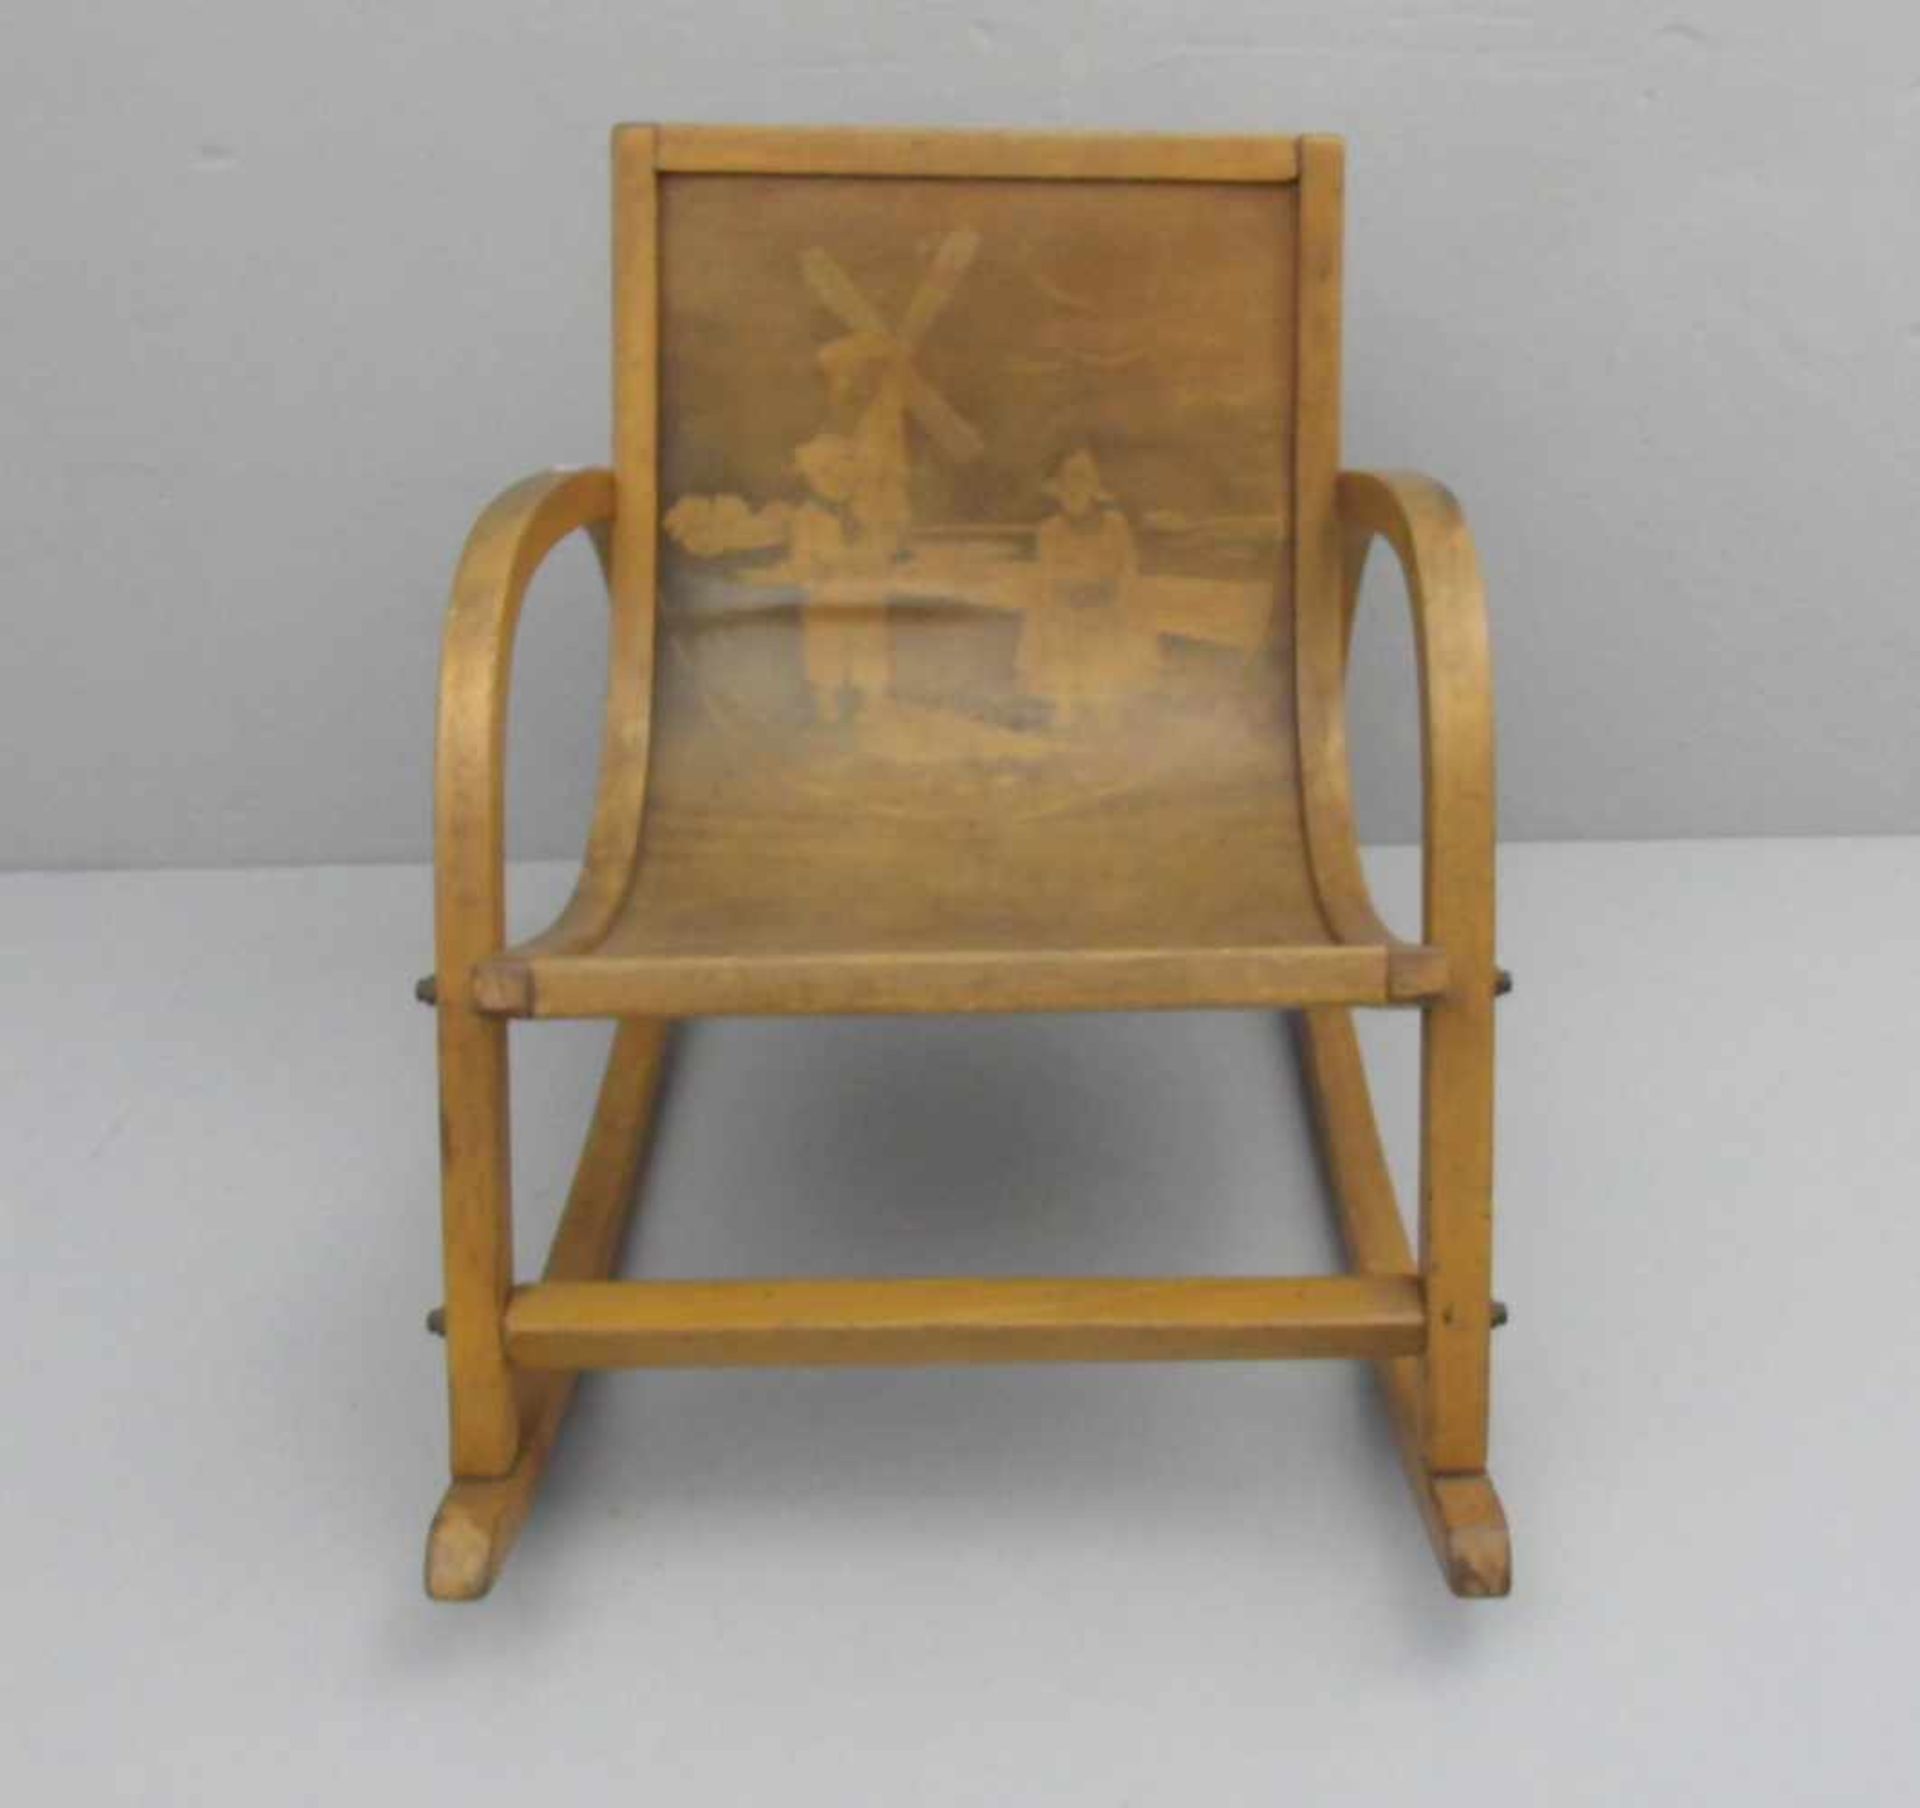 KINDER - SCHAUKELSTUHL / rocking chair for children, Niederlande, 1920er Jahre. Zargenrahmen aus